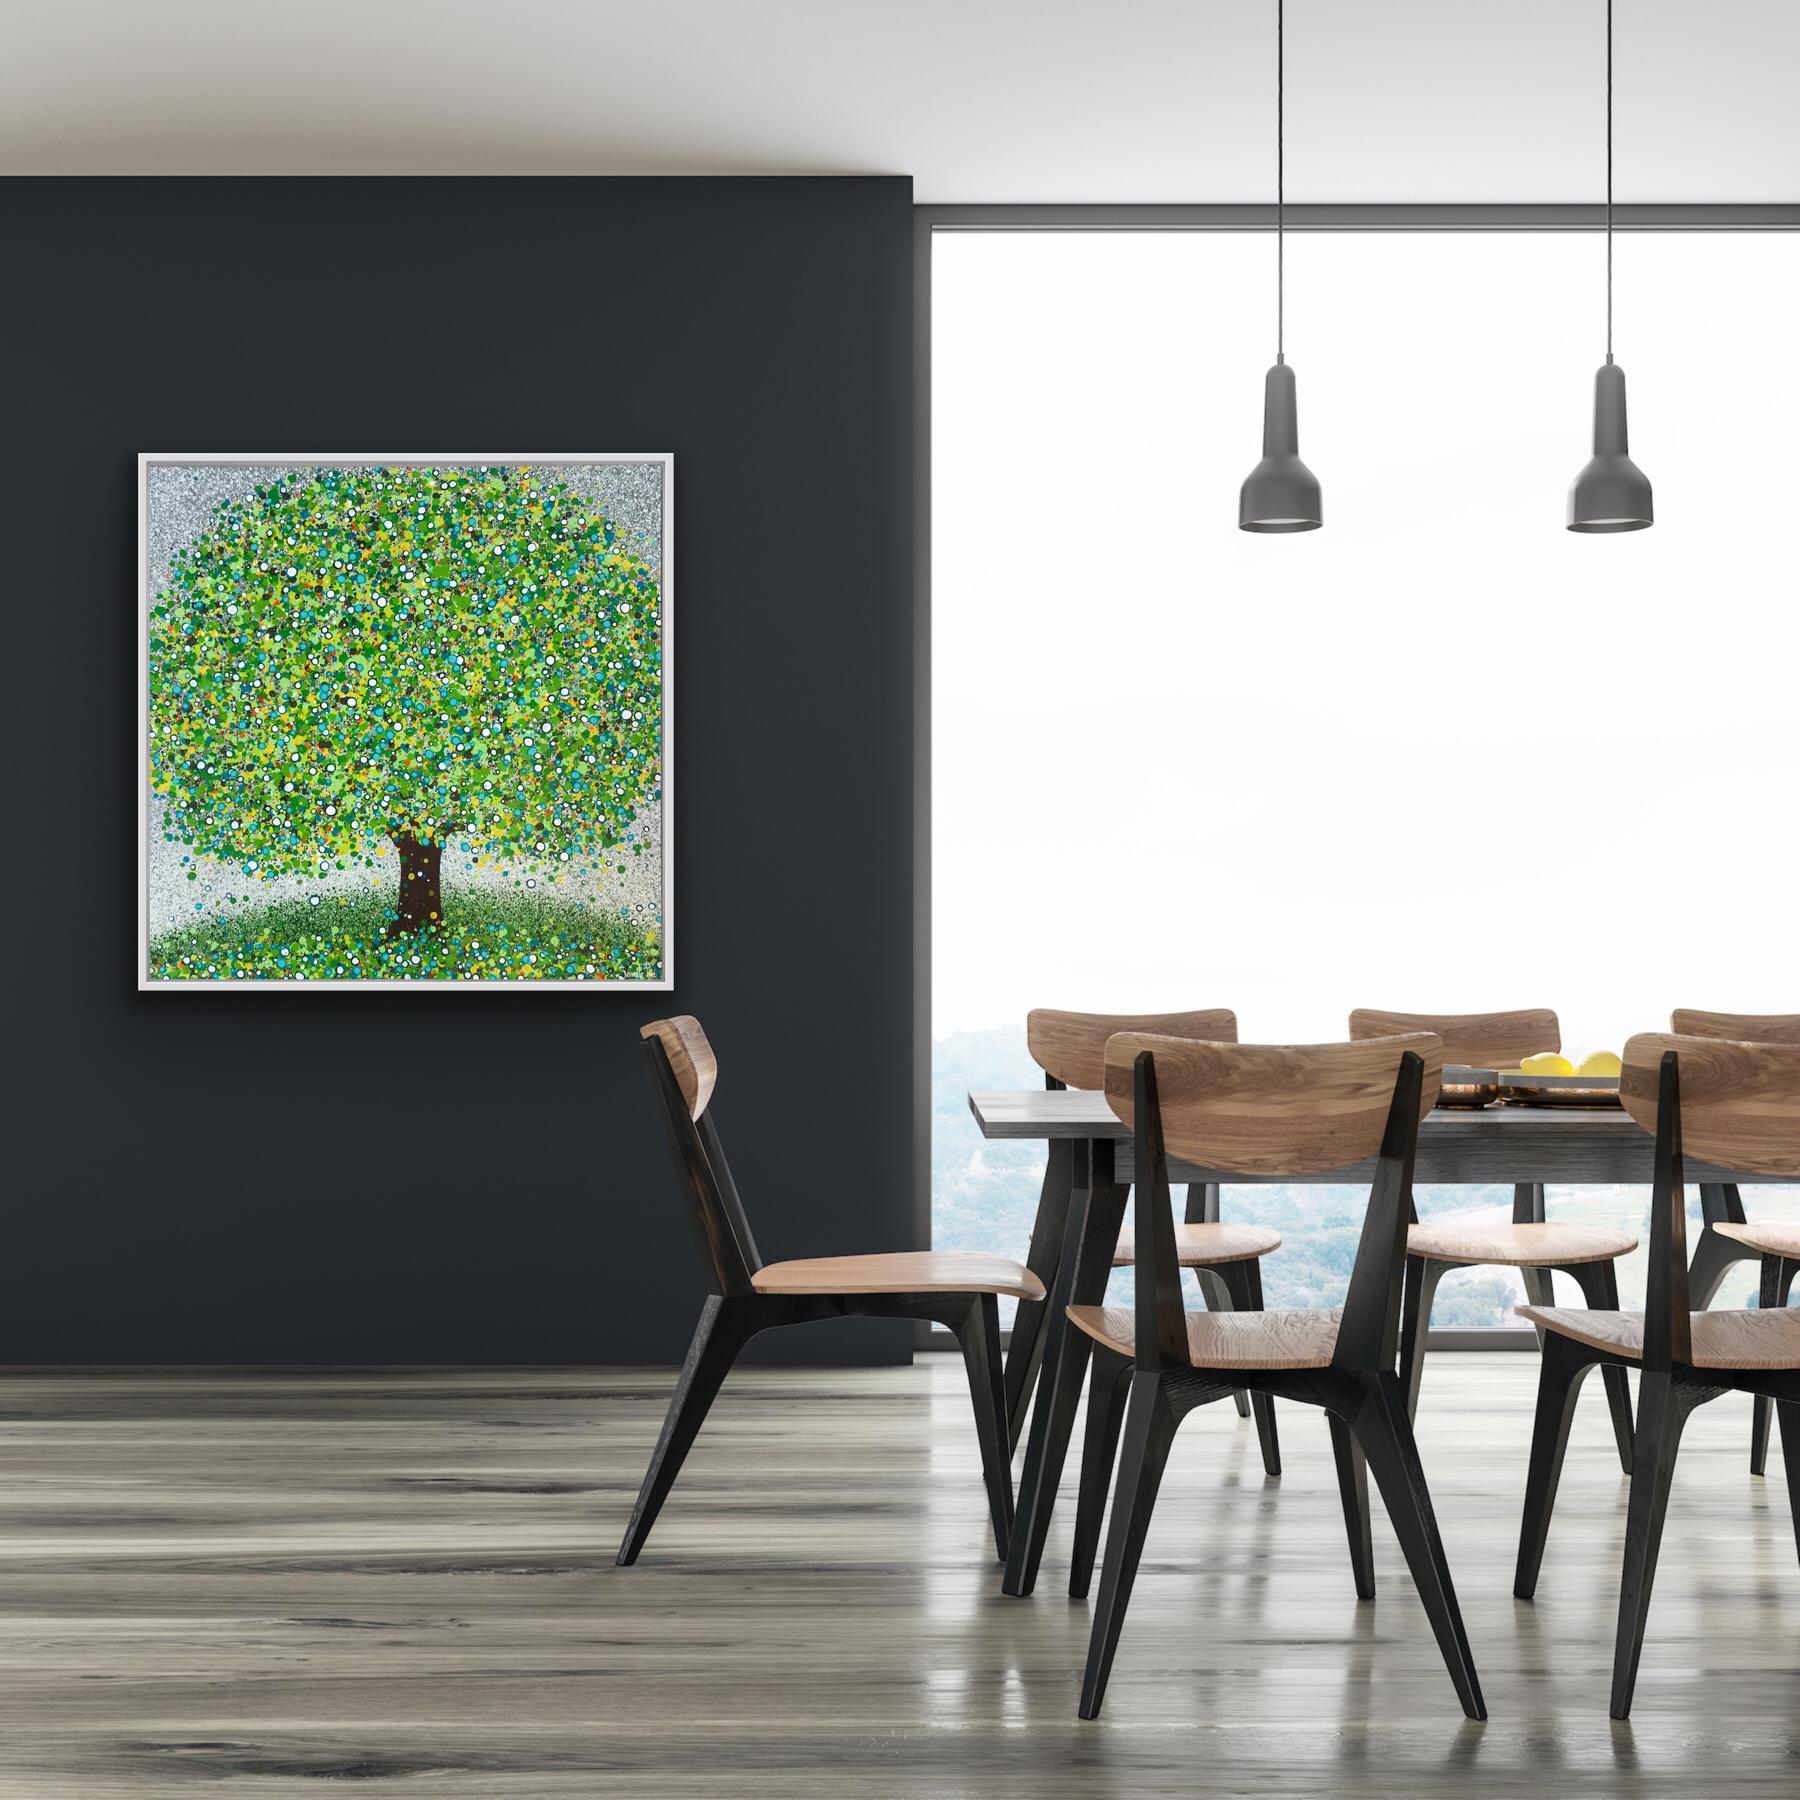 Peinture originale de Sarah Pye - Un seul arbre avec une floraison de verts, de bleus, de blancs, de jaunes et d'oranges.


INFORMATIONS COMPLÉMENTAIRES :
Arbre Vert par Sarah Pye Peinture originale
Peinture acrylique sur toile
Dimensions complètes